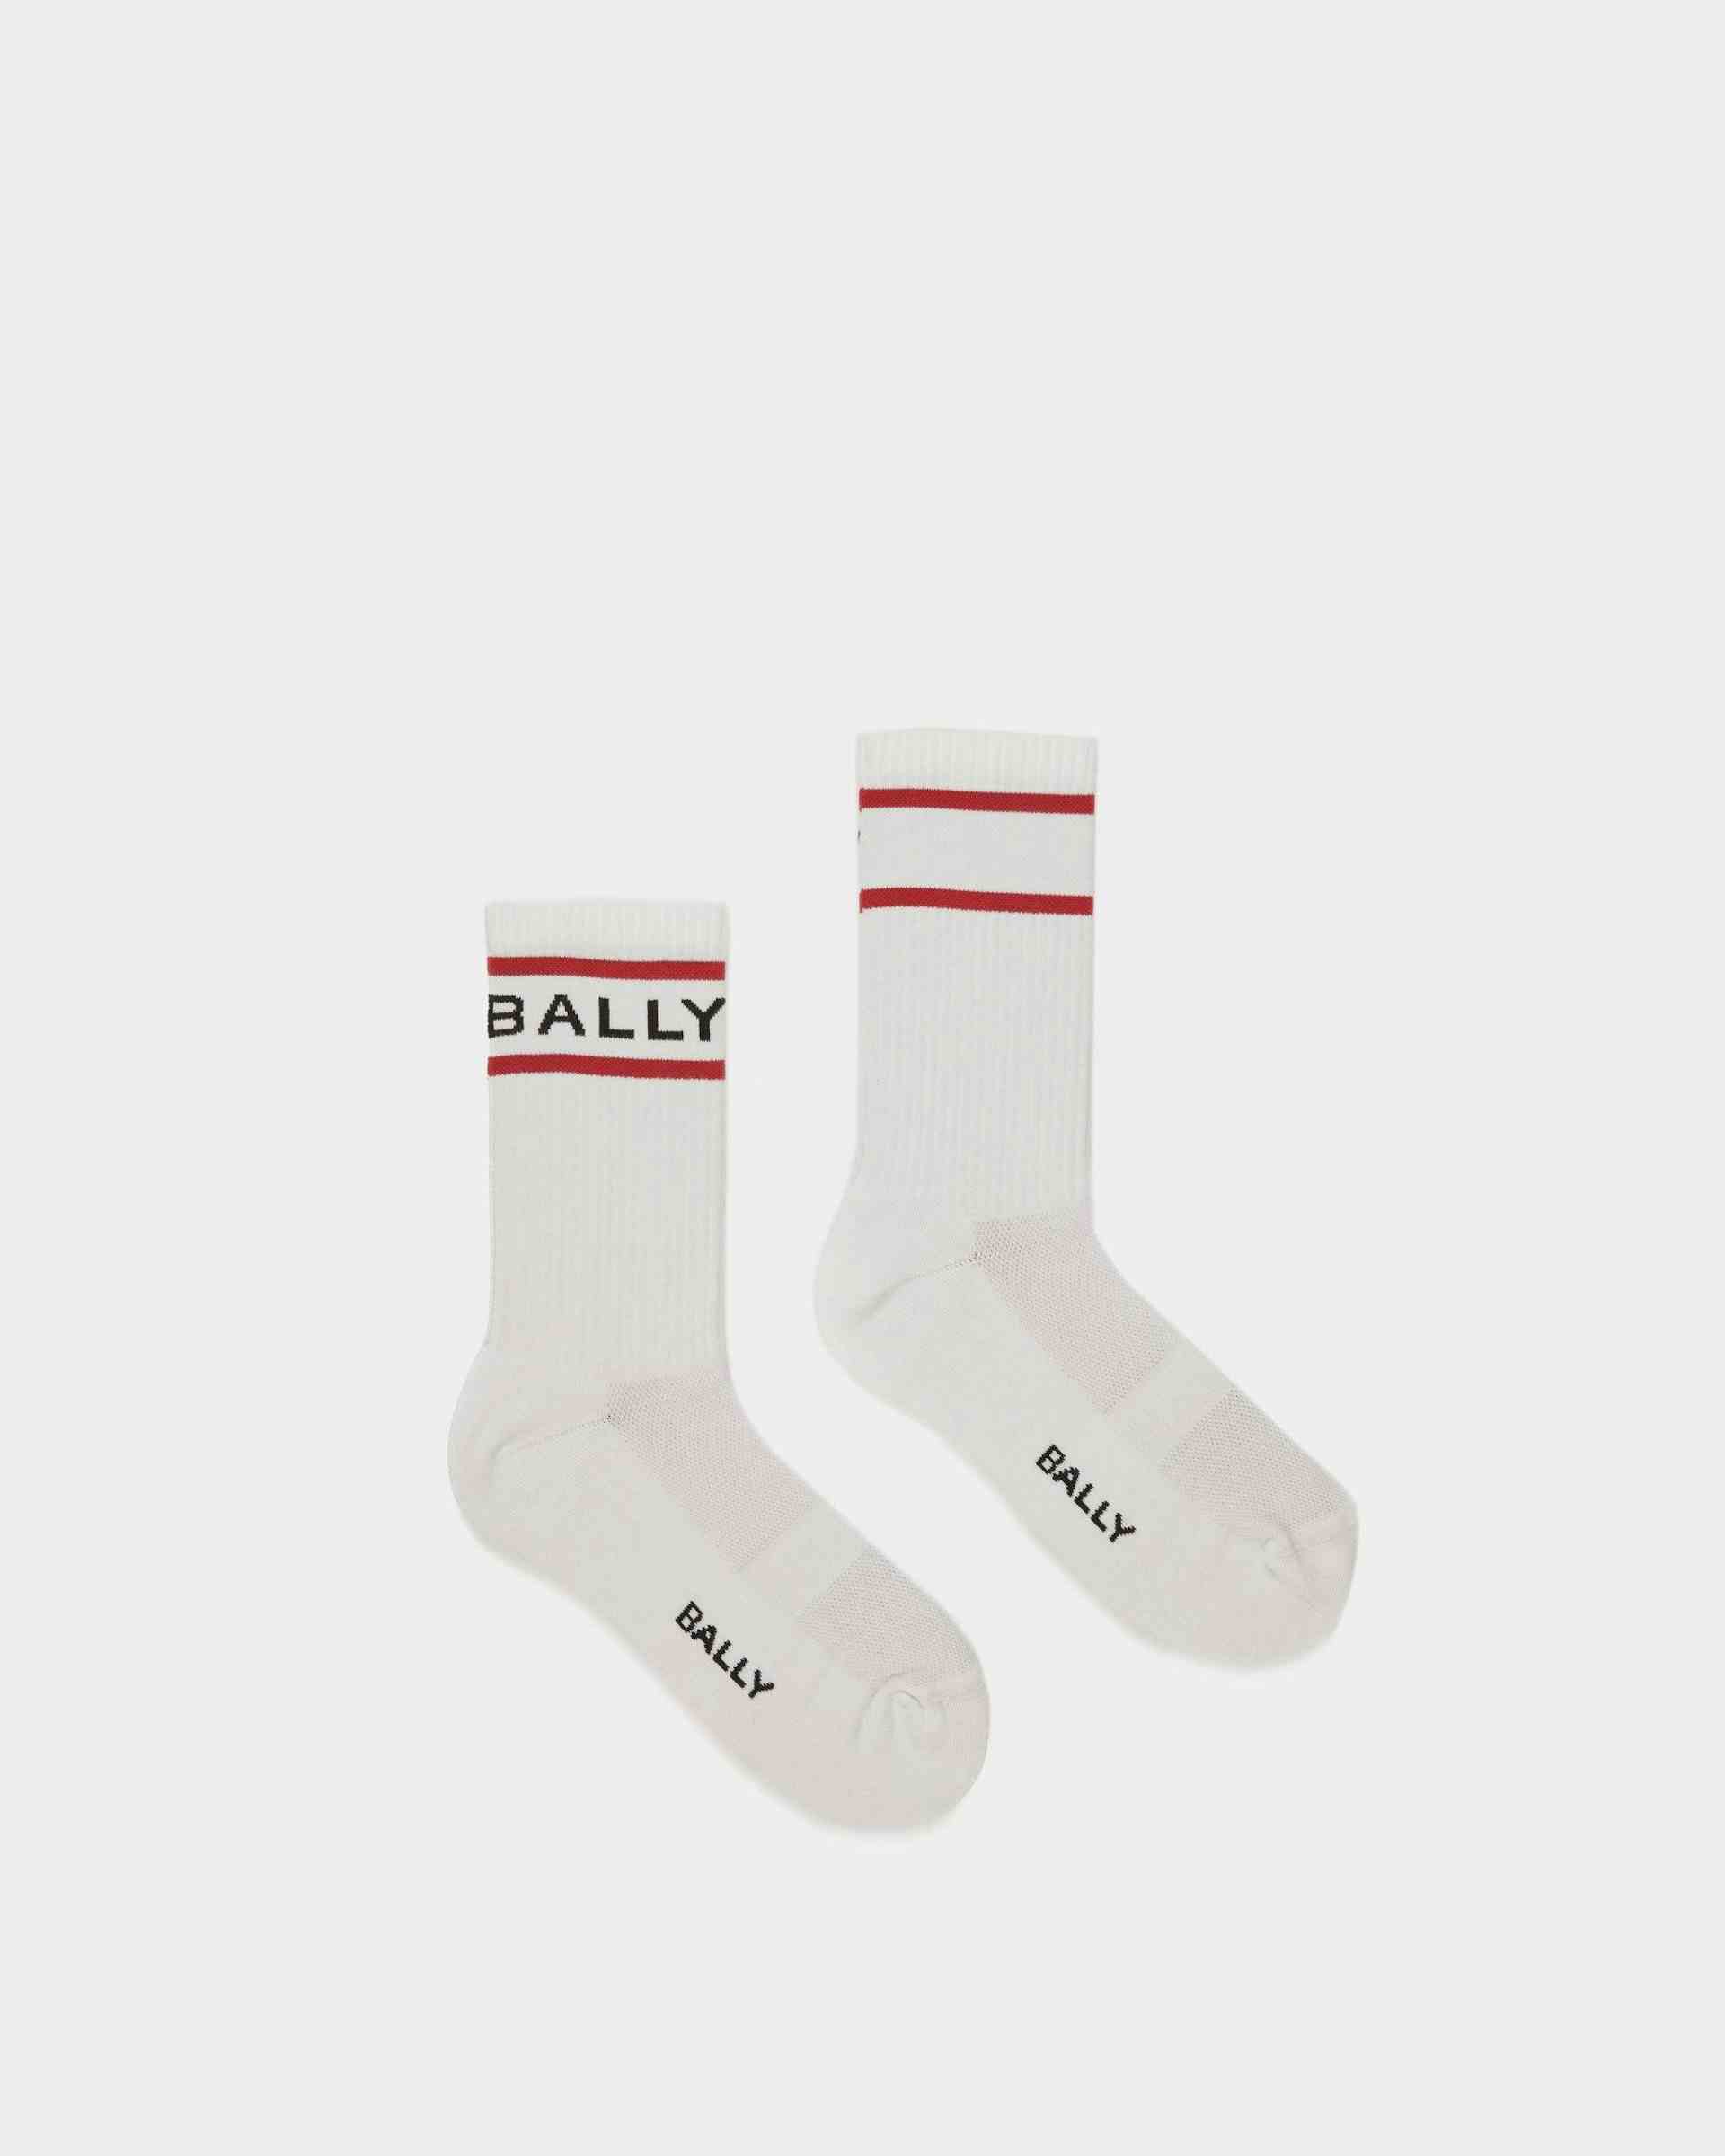 Bally Stripe Socken In Weiß und Tiefrubinrot - Herren - Bally